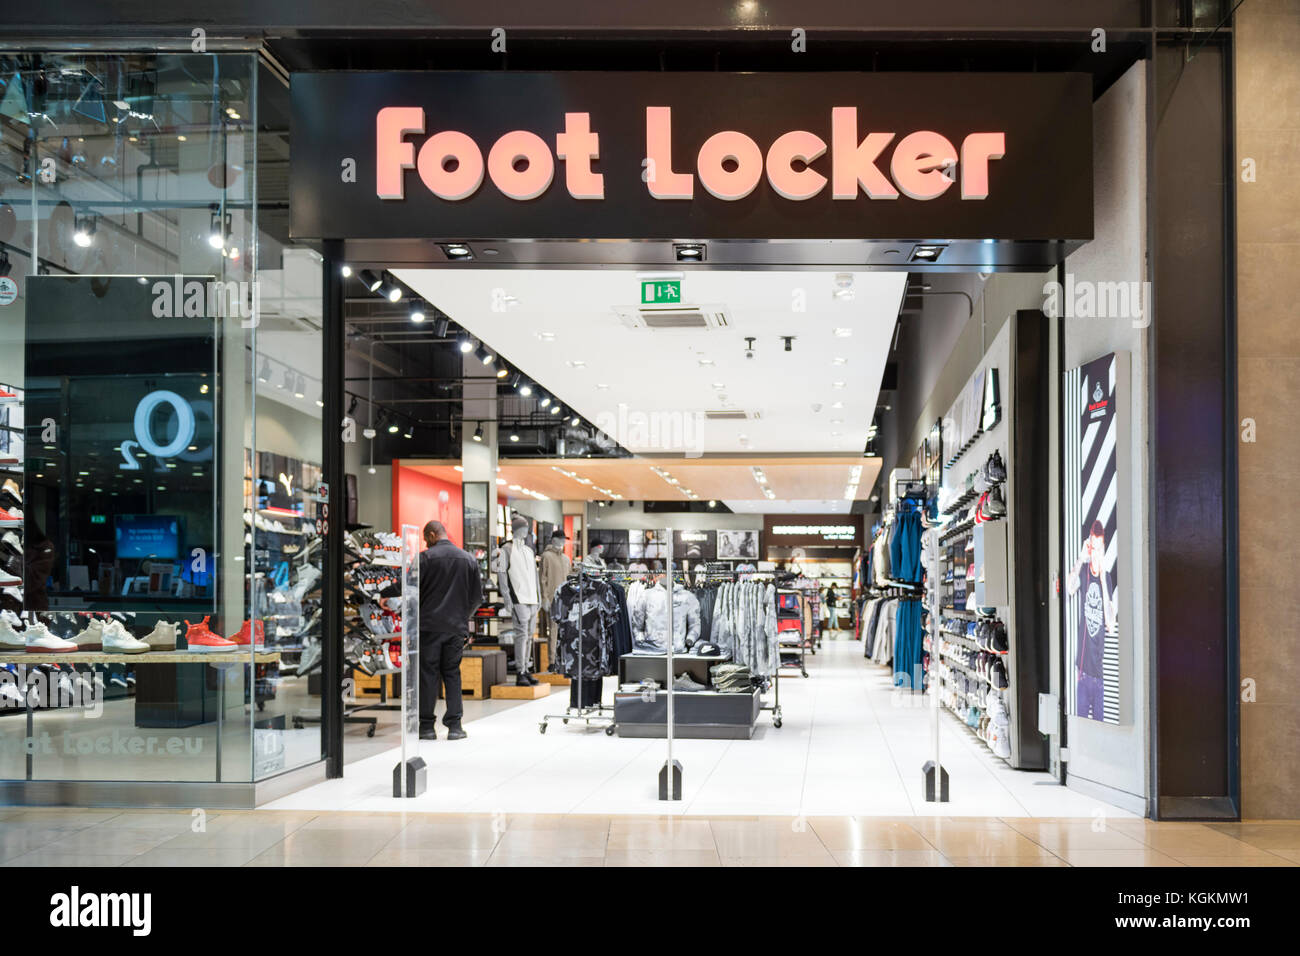 Foot Locker store, UK Stock Photo Alamy